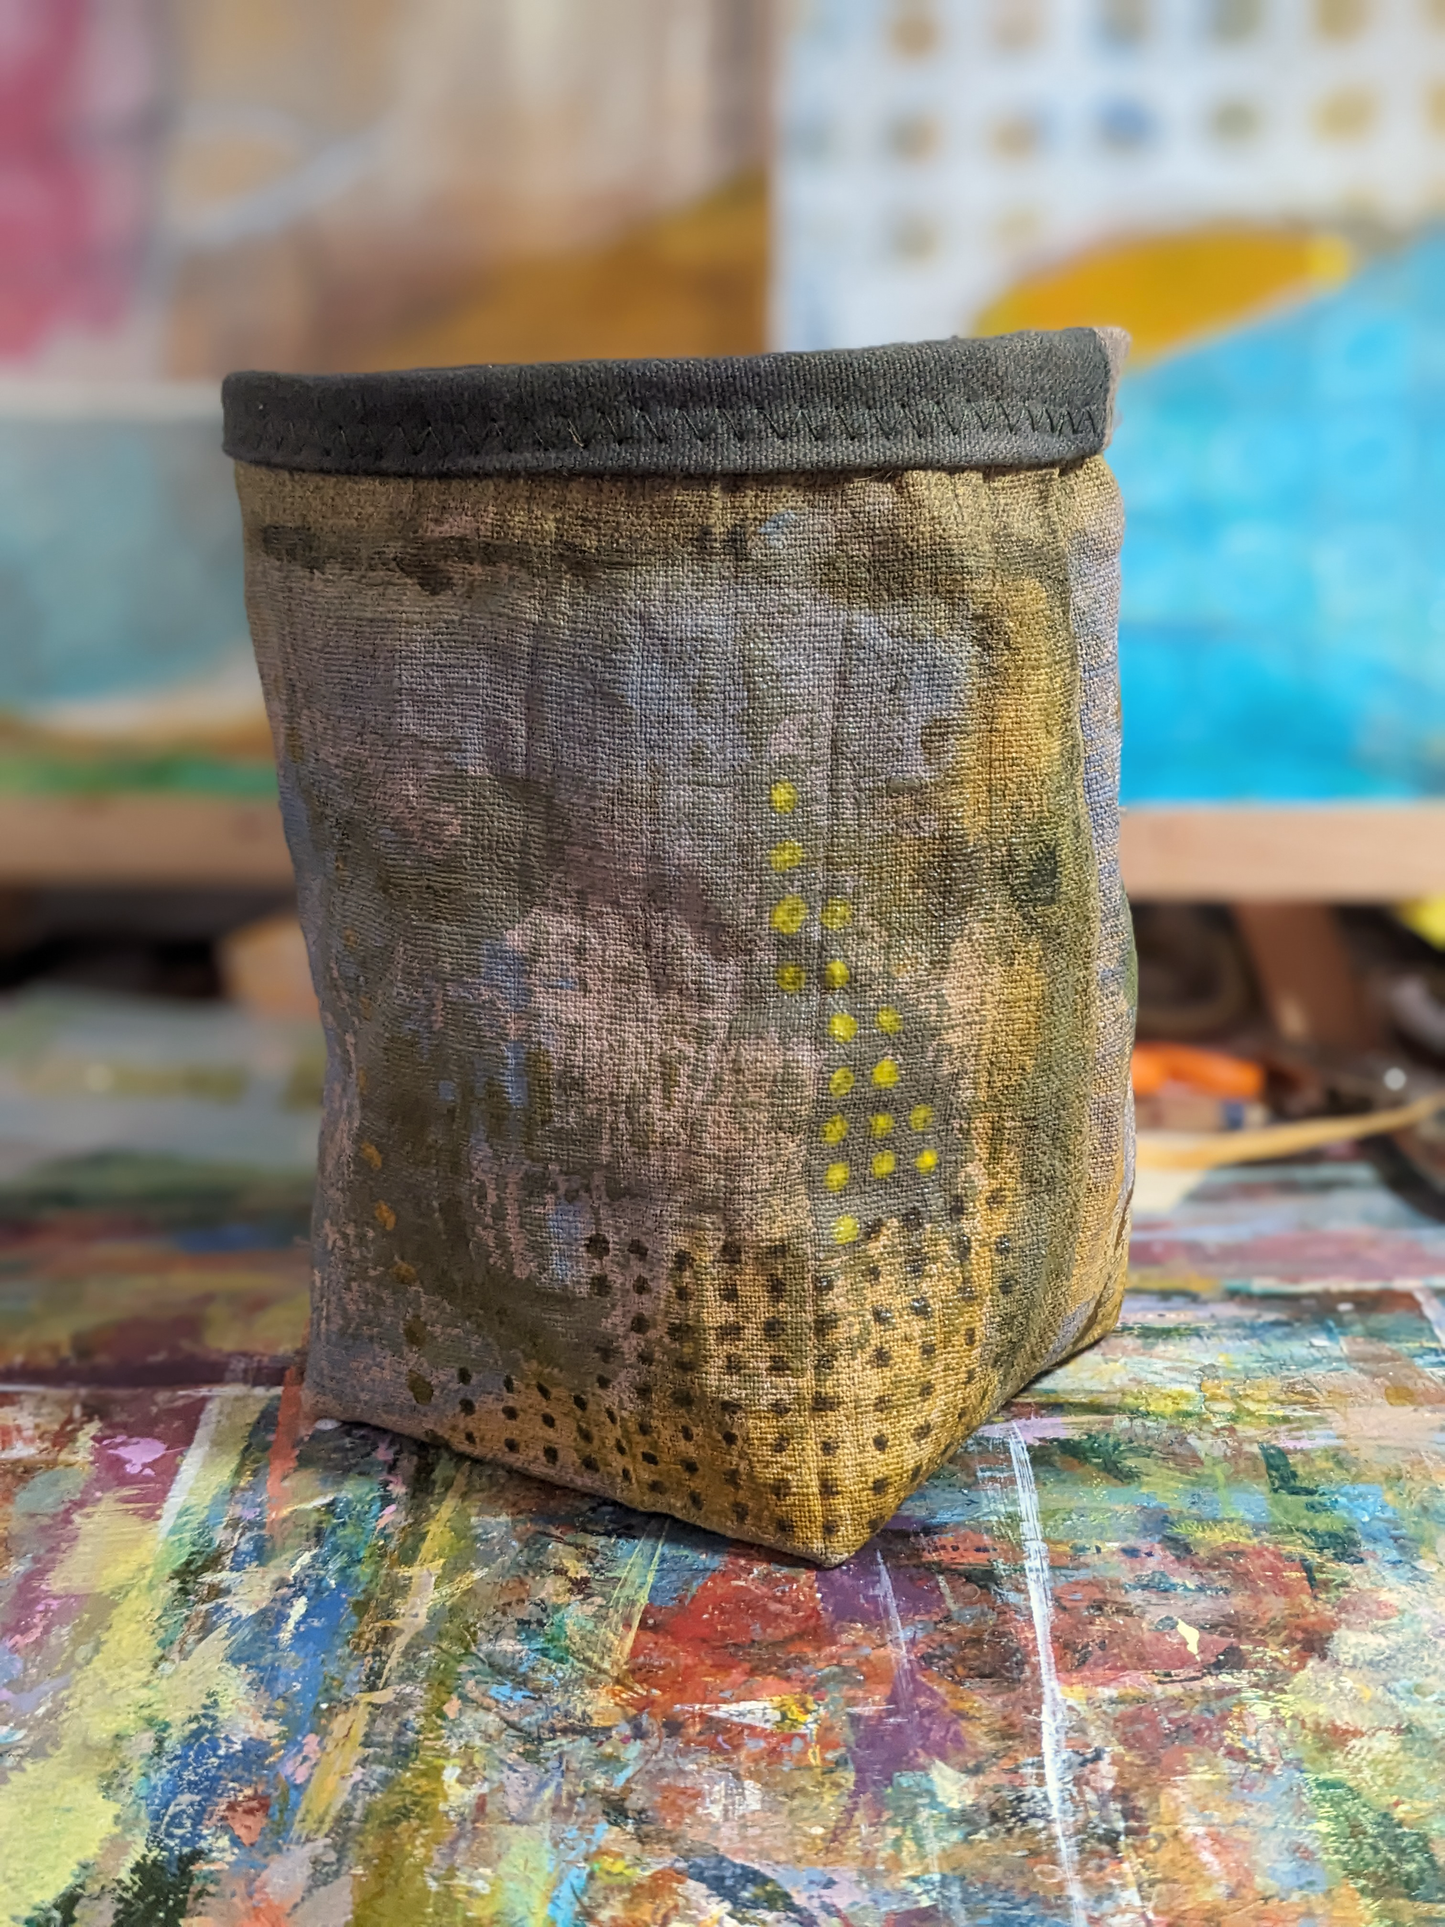 secret lentil handmade canvas basket